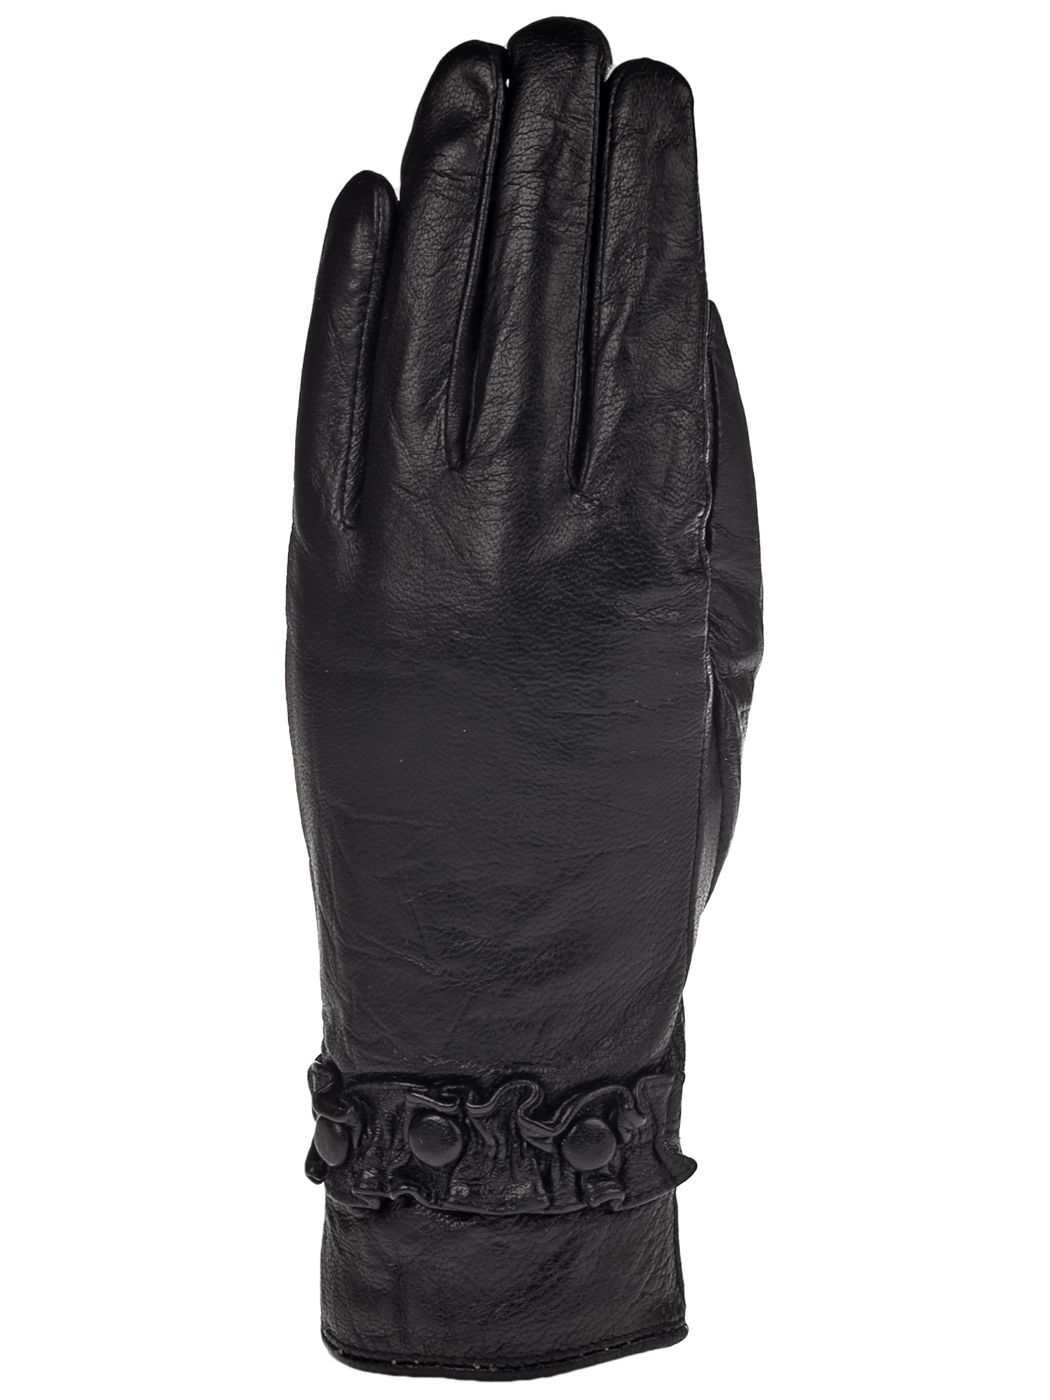 24 белых перчатки и 20 черных. Перчатки -20. Каталог перчаток 20 века.